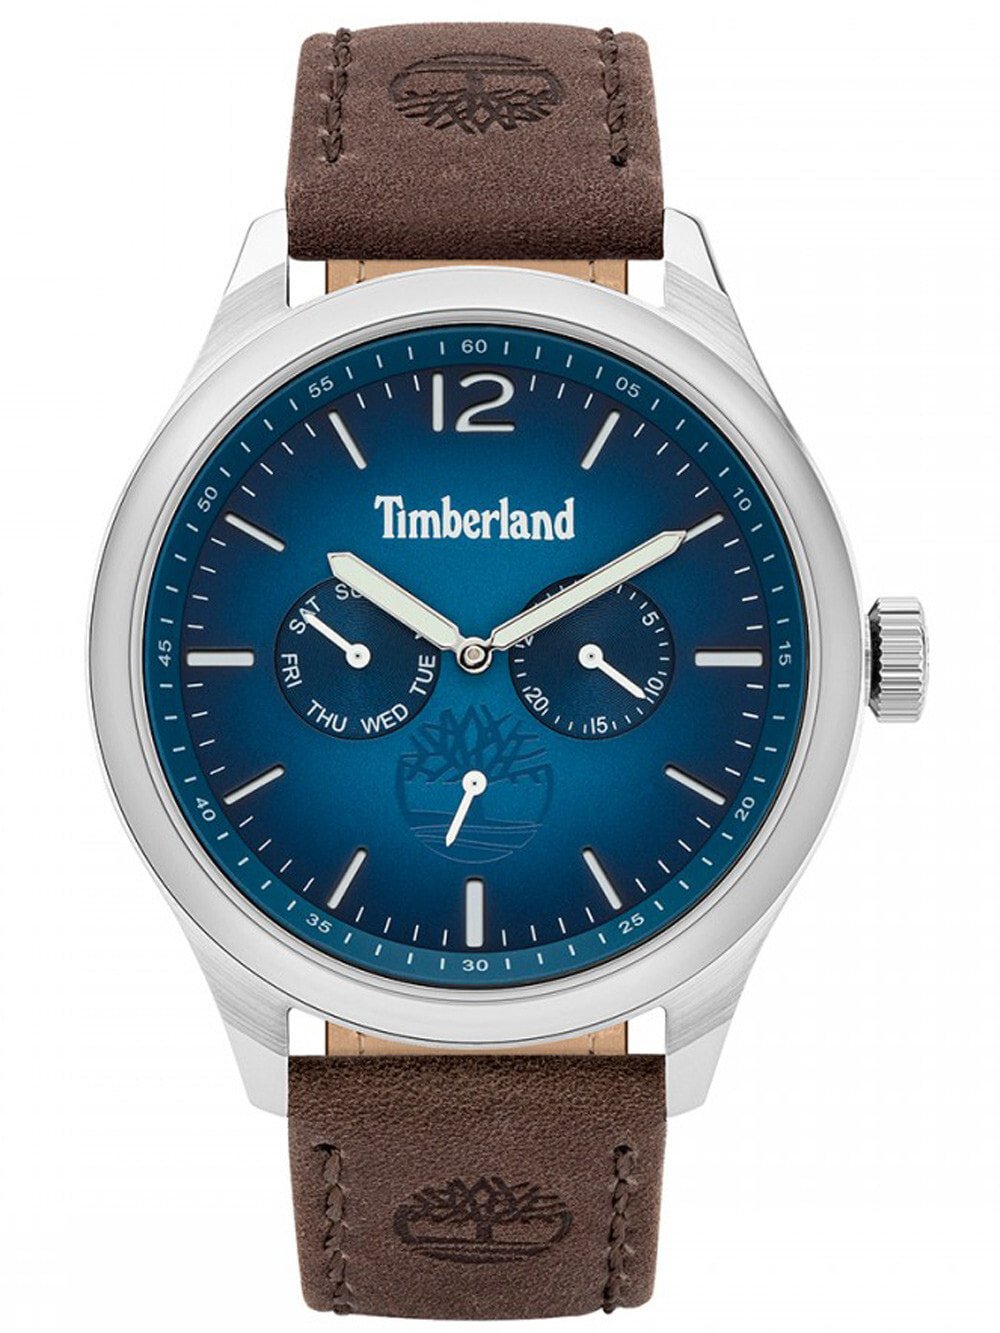 Мужские наручные часы с коричневым кожаным ремешком  Timberland TBL15940JS.03 Saugus 46mm 5ATM